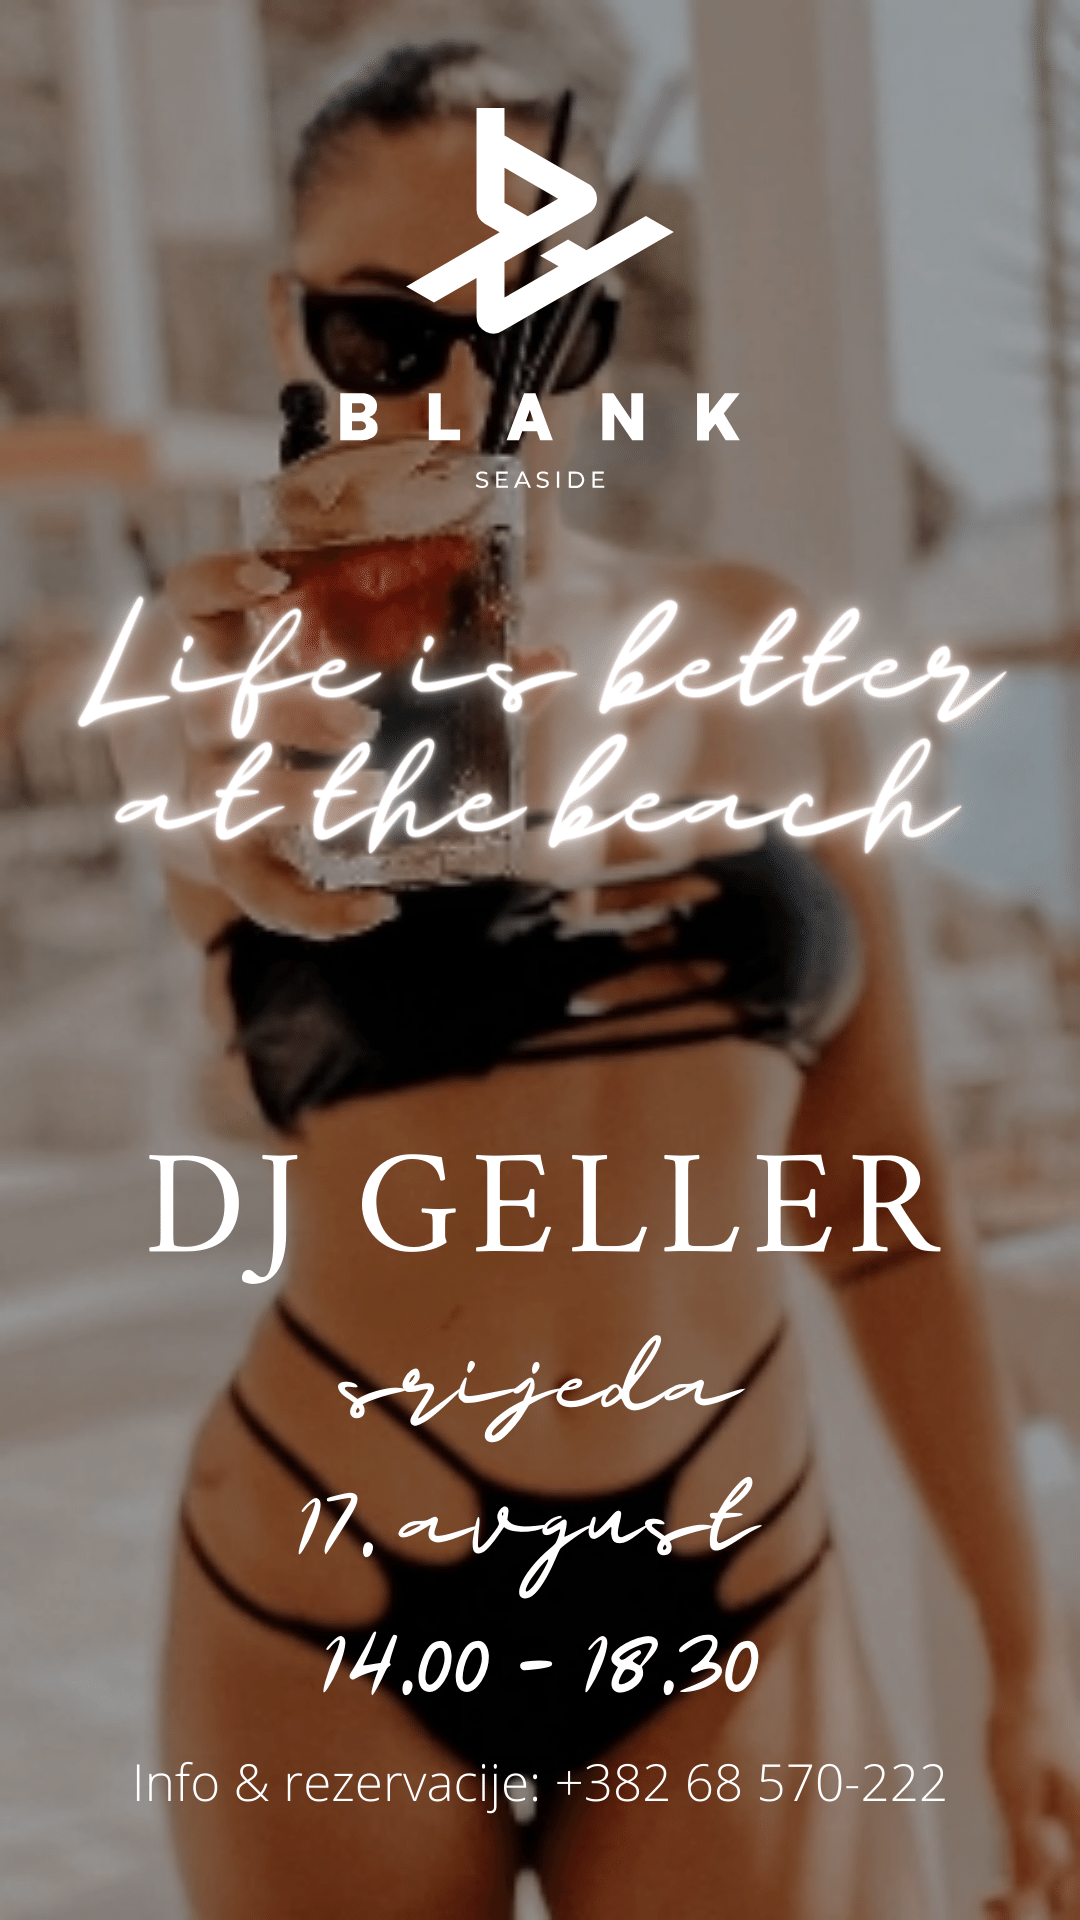 DJ Geller